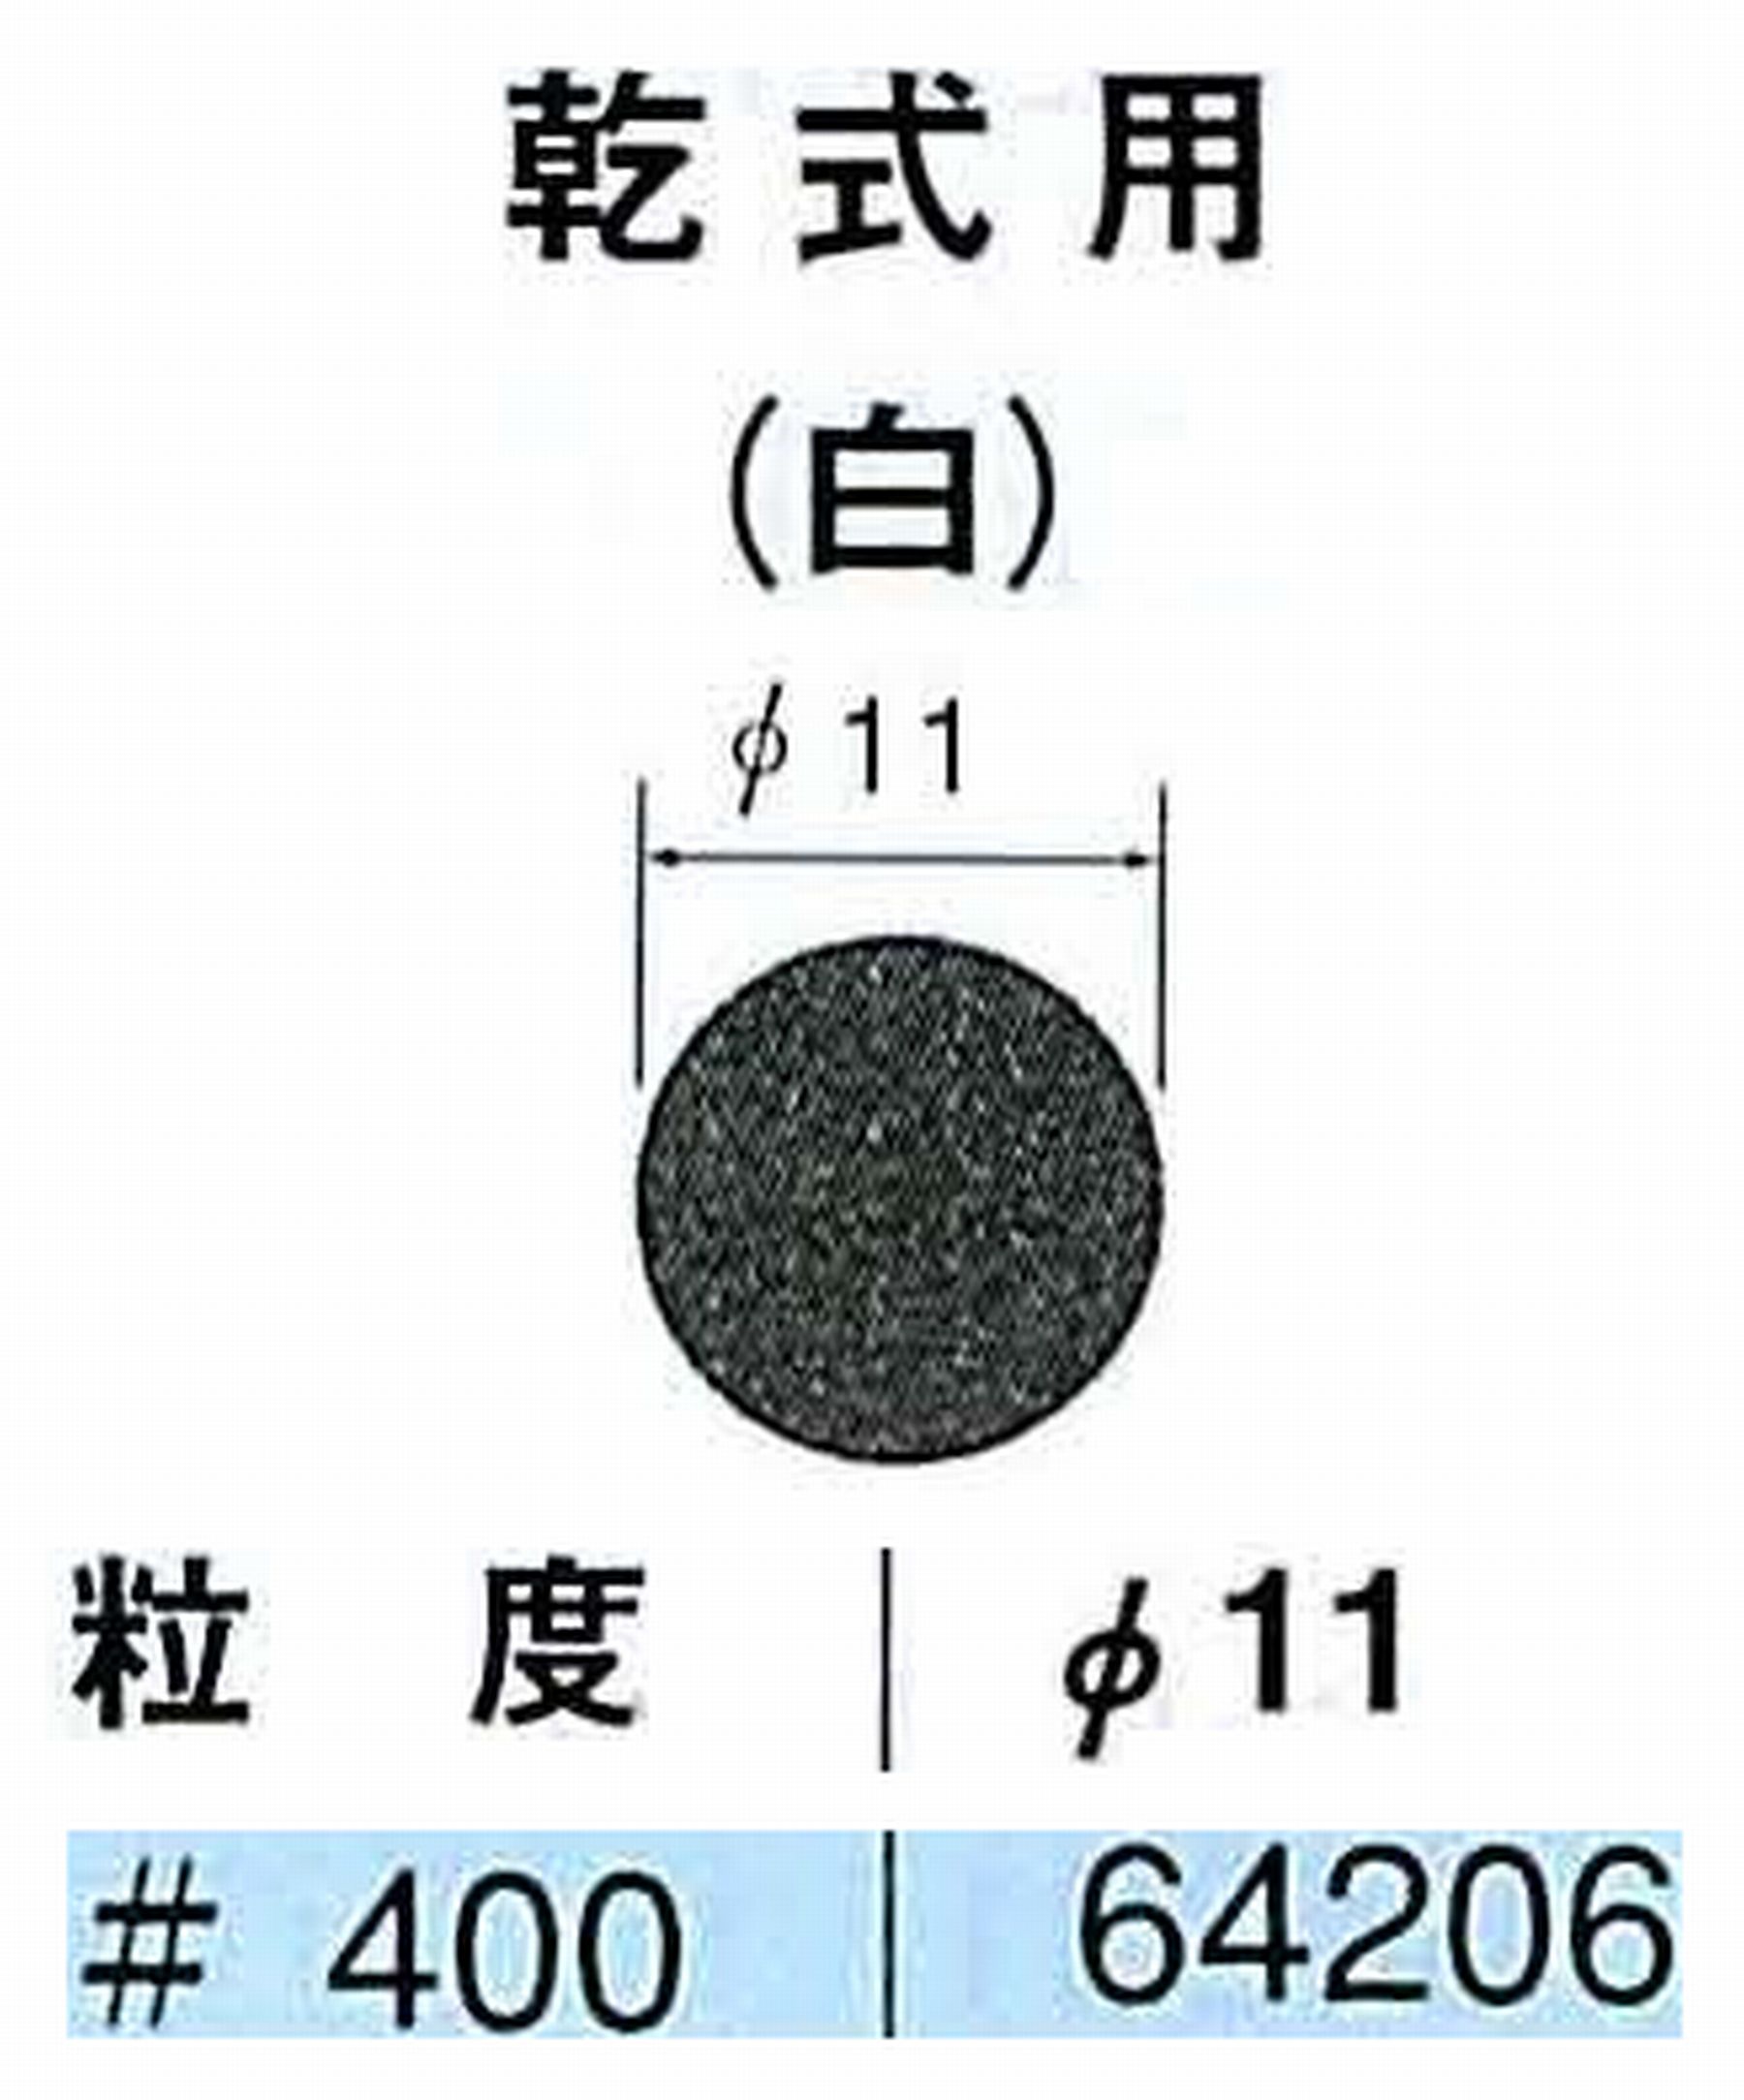 ナカニシ/NAKANISHI アングルグラインダ(電動・エアー) アングルアタッチメント専用工具 サンドペーパーディスク(紙基材タイプ)裏面のり処理 64206